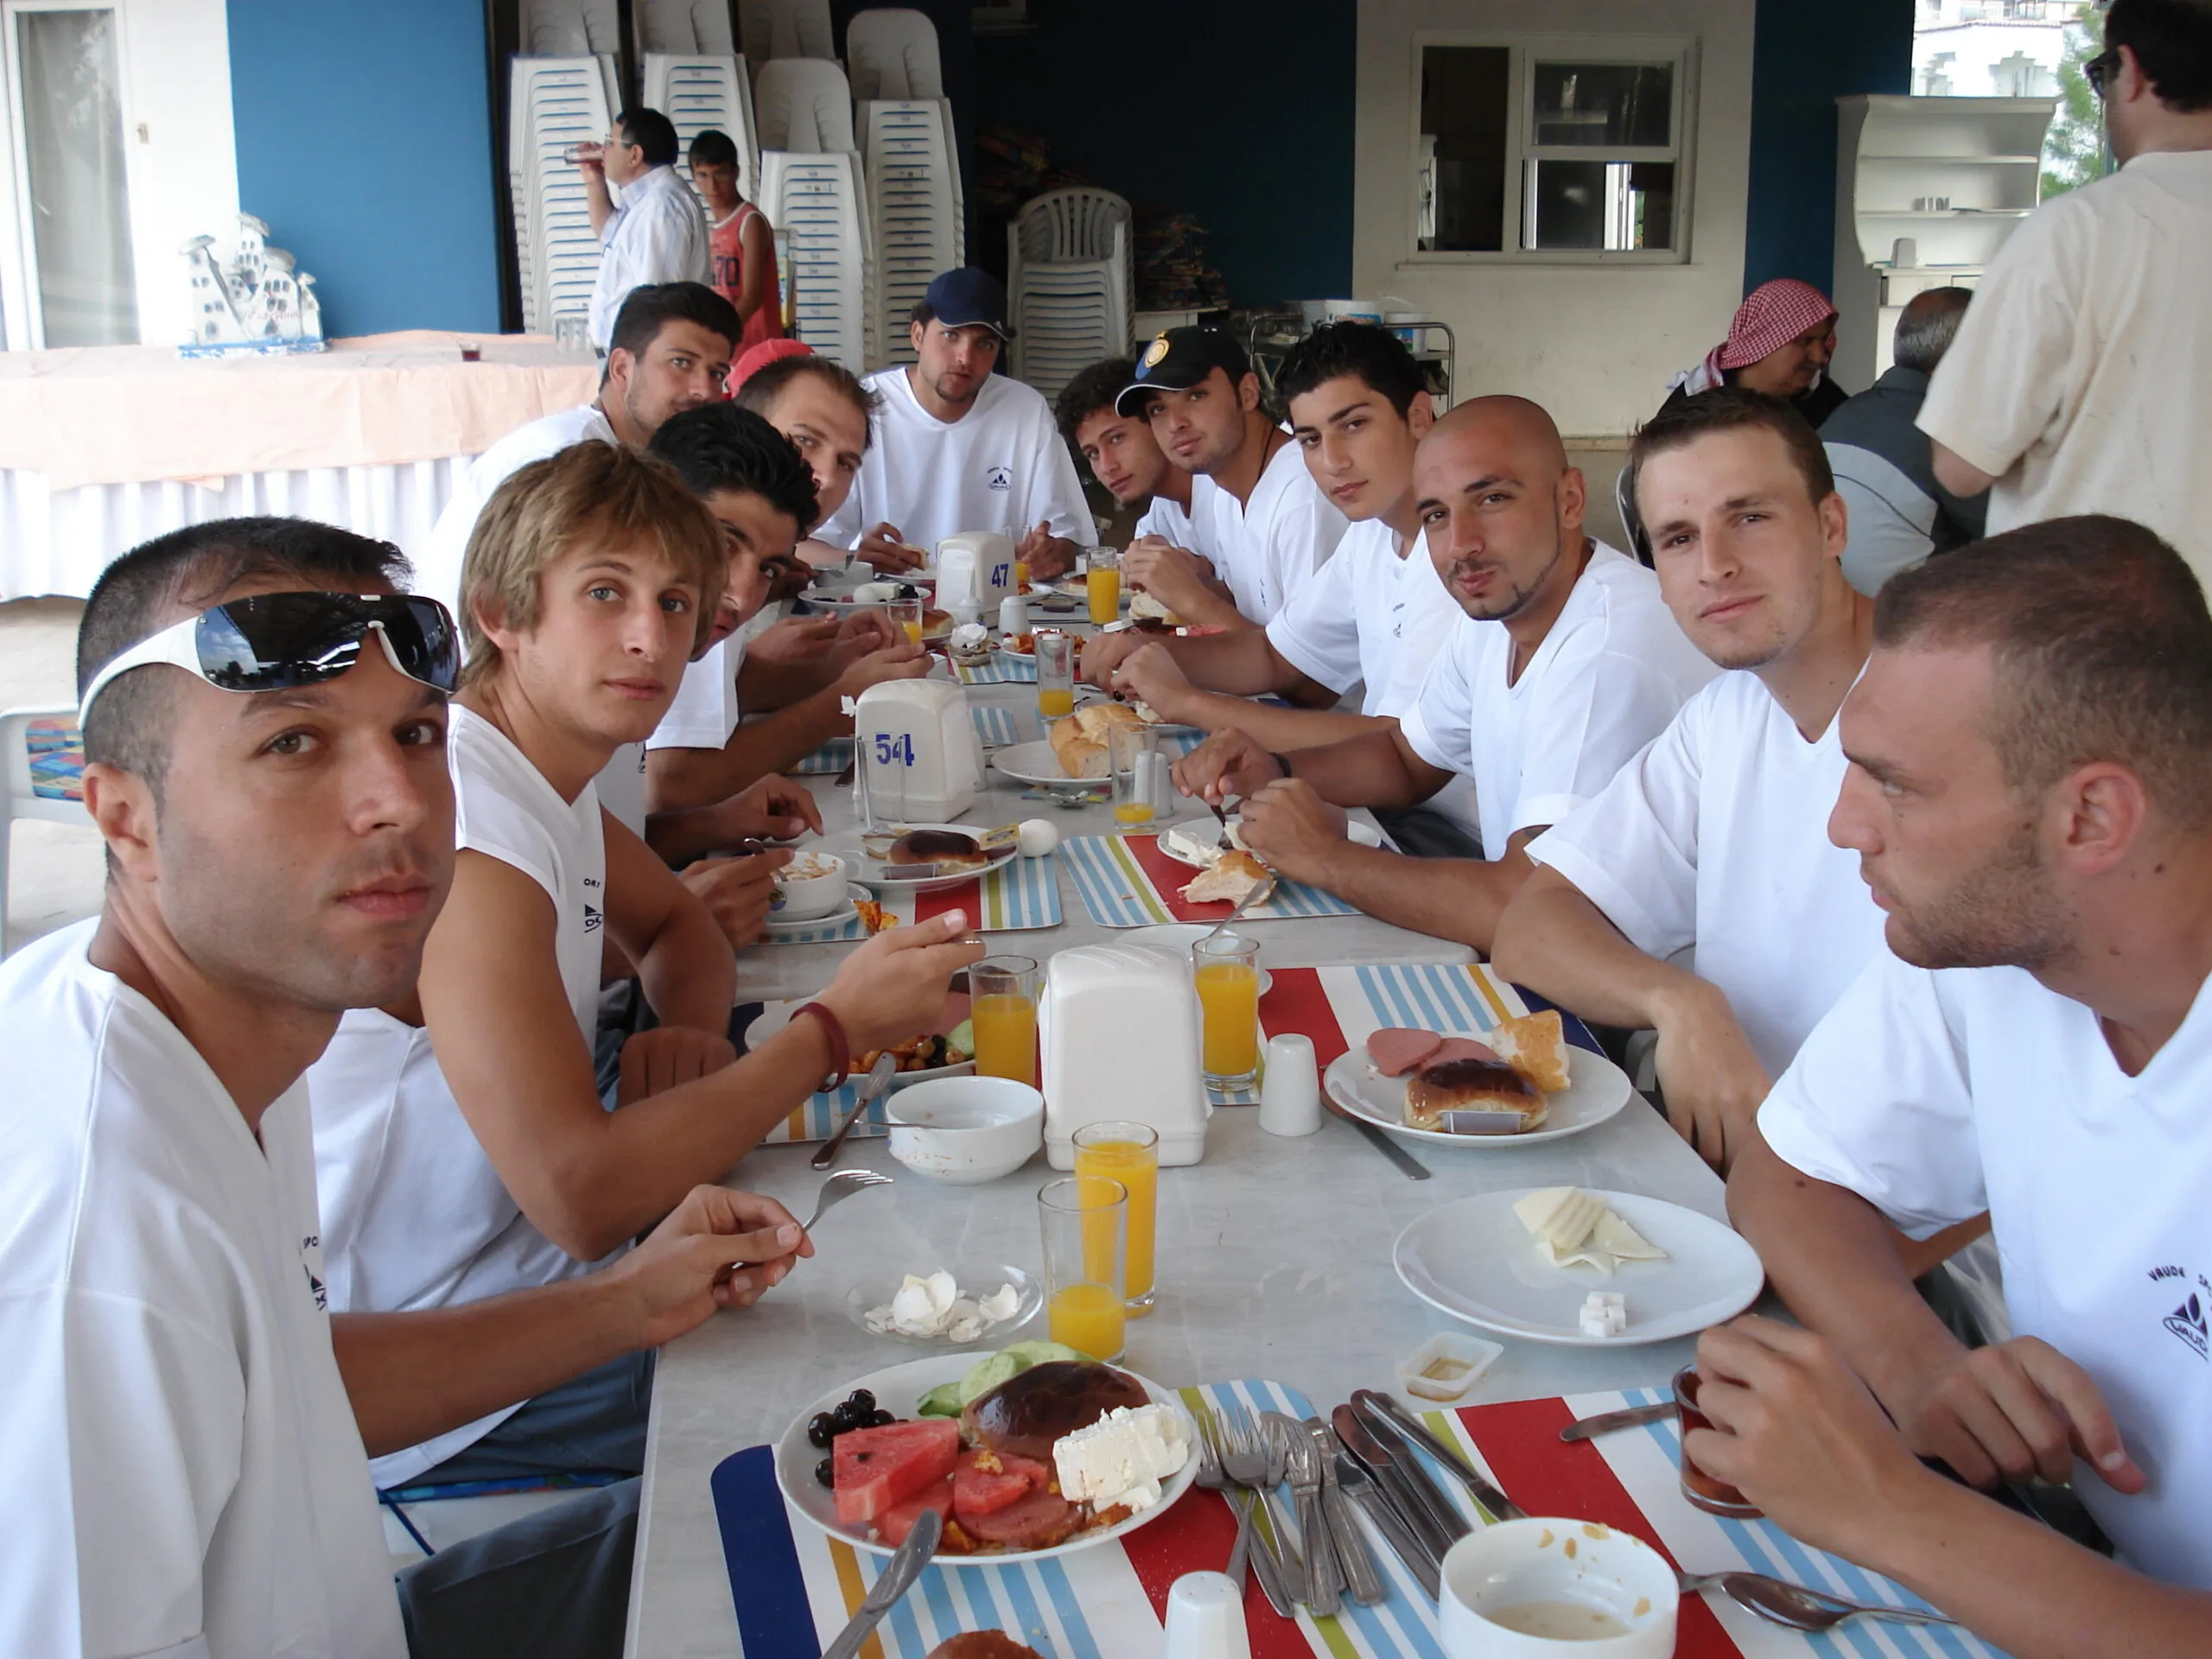 Une équipe de basket-ball, tous vêtus de blanc, mangeant un repas ensemble